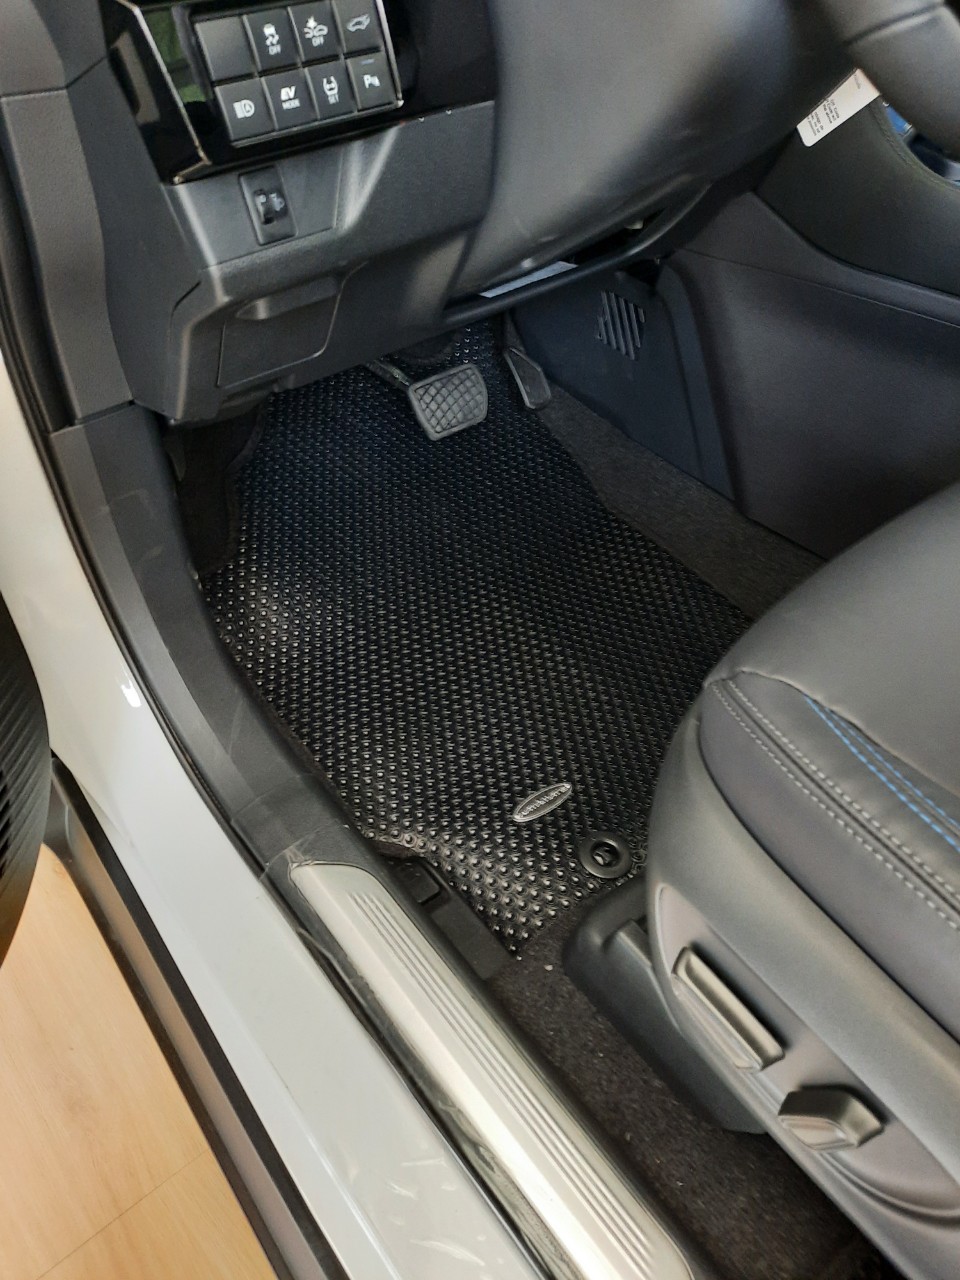 Thảm lót sàn KATA cho xe Toyota Yaris Cross - Hàng chính hãng không mùi